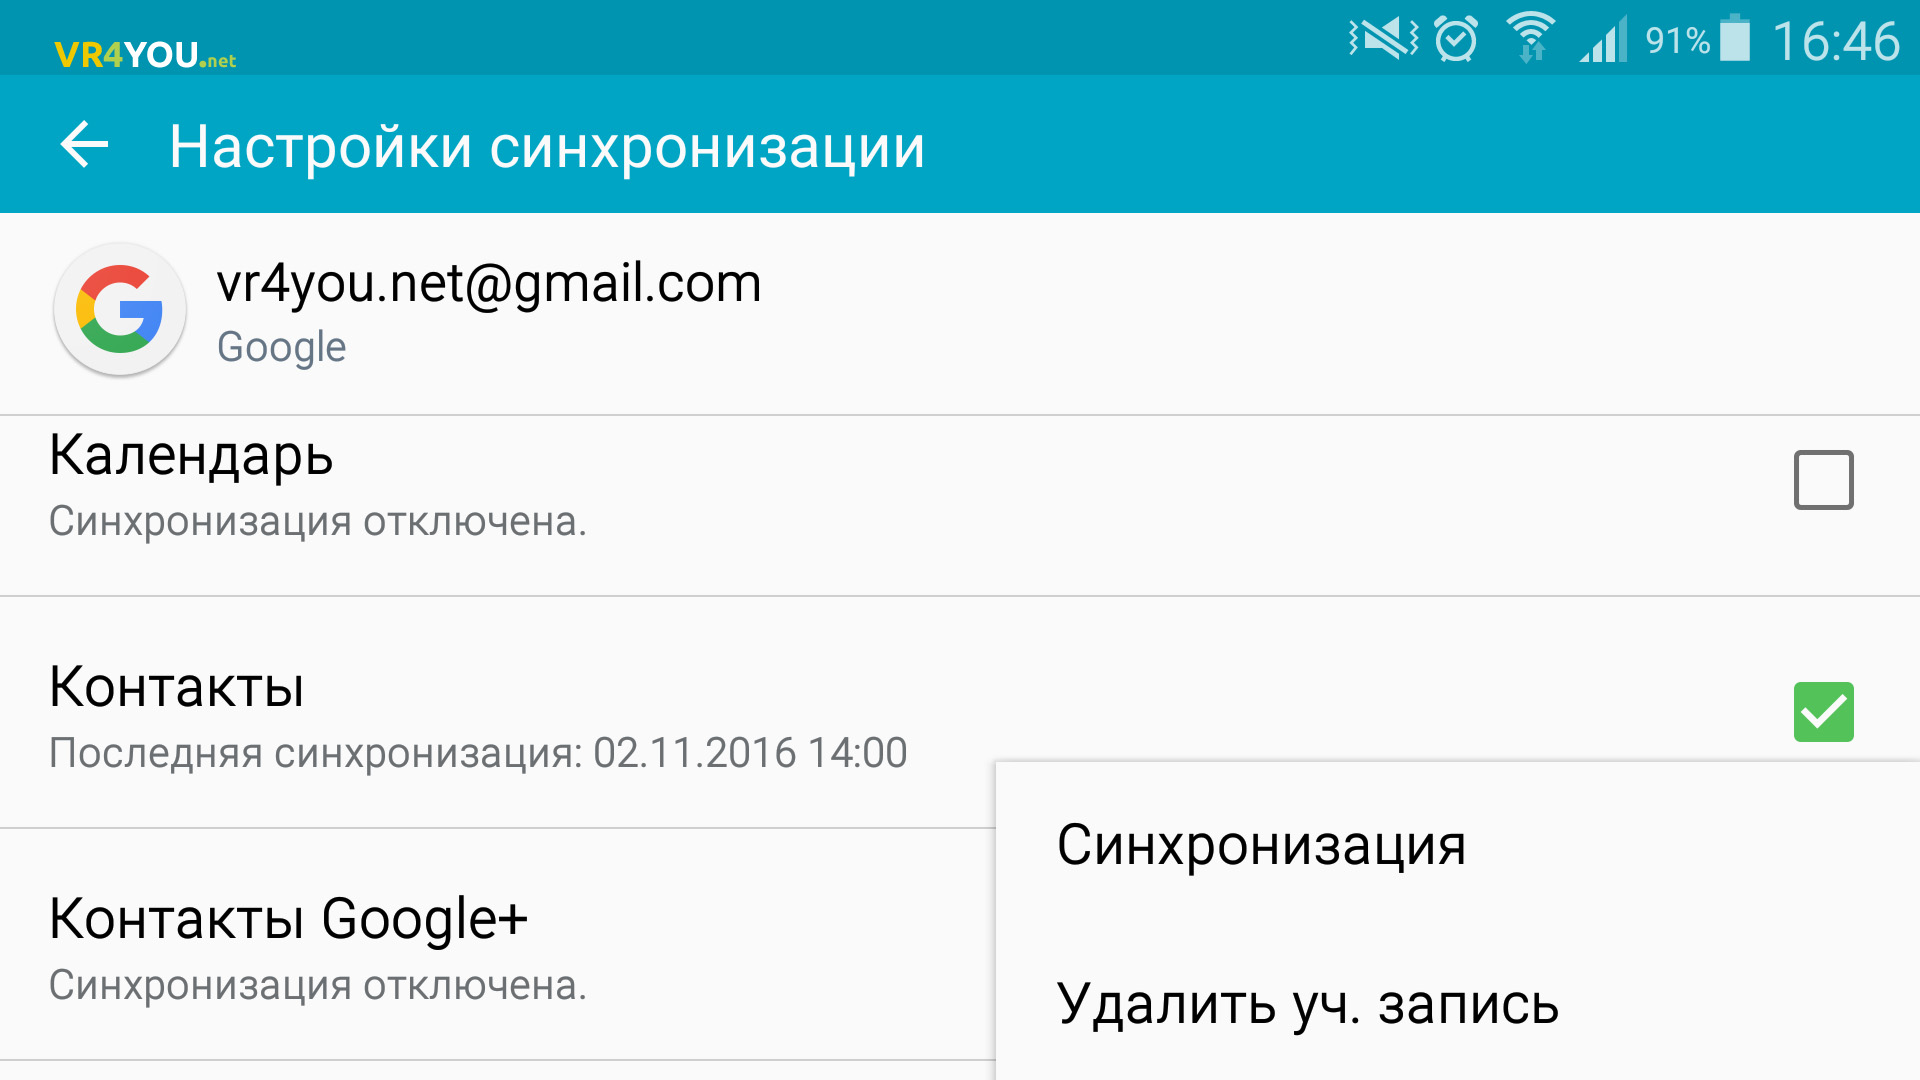 Синхронизация контактов Android-устройства с Google аккаунтом